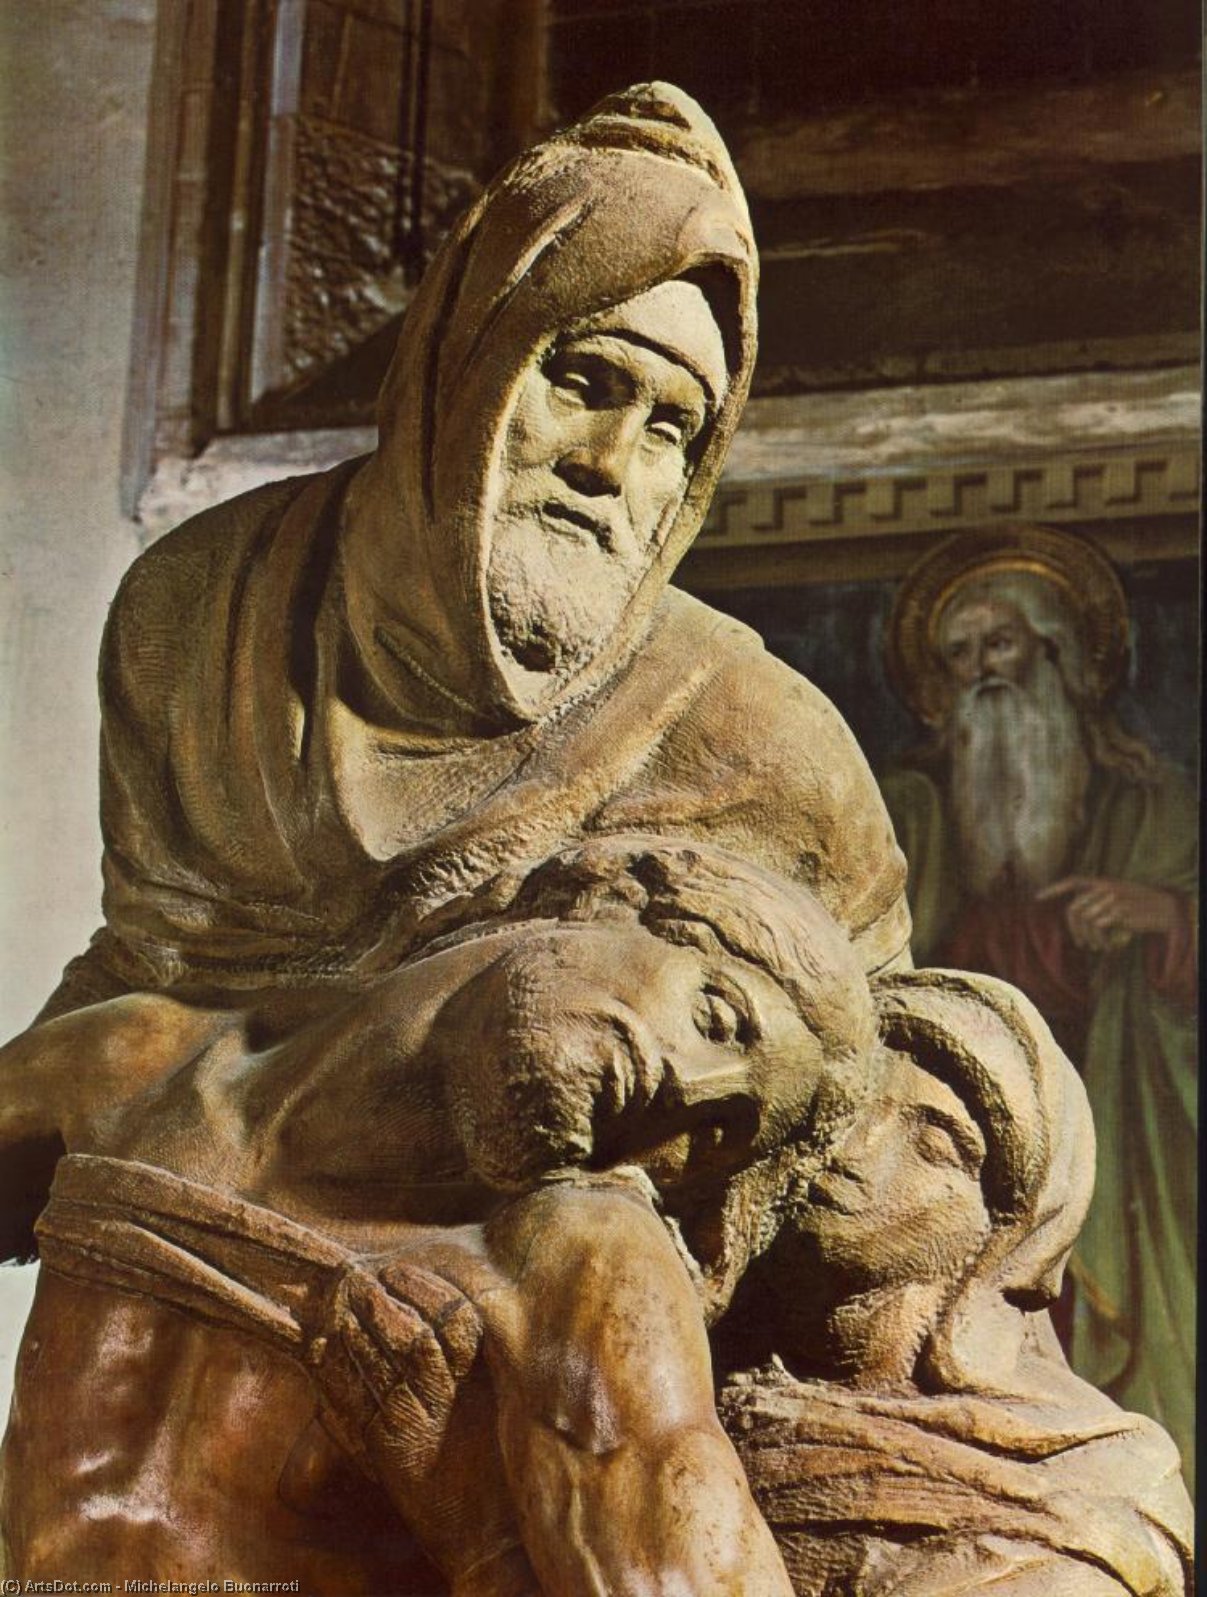 WikiOO.org - Encyclopedia of Fine Arts - Målning, konstverk Michelangelo Buonarroti - Pietà (detail)